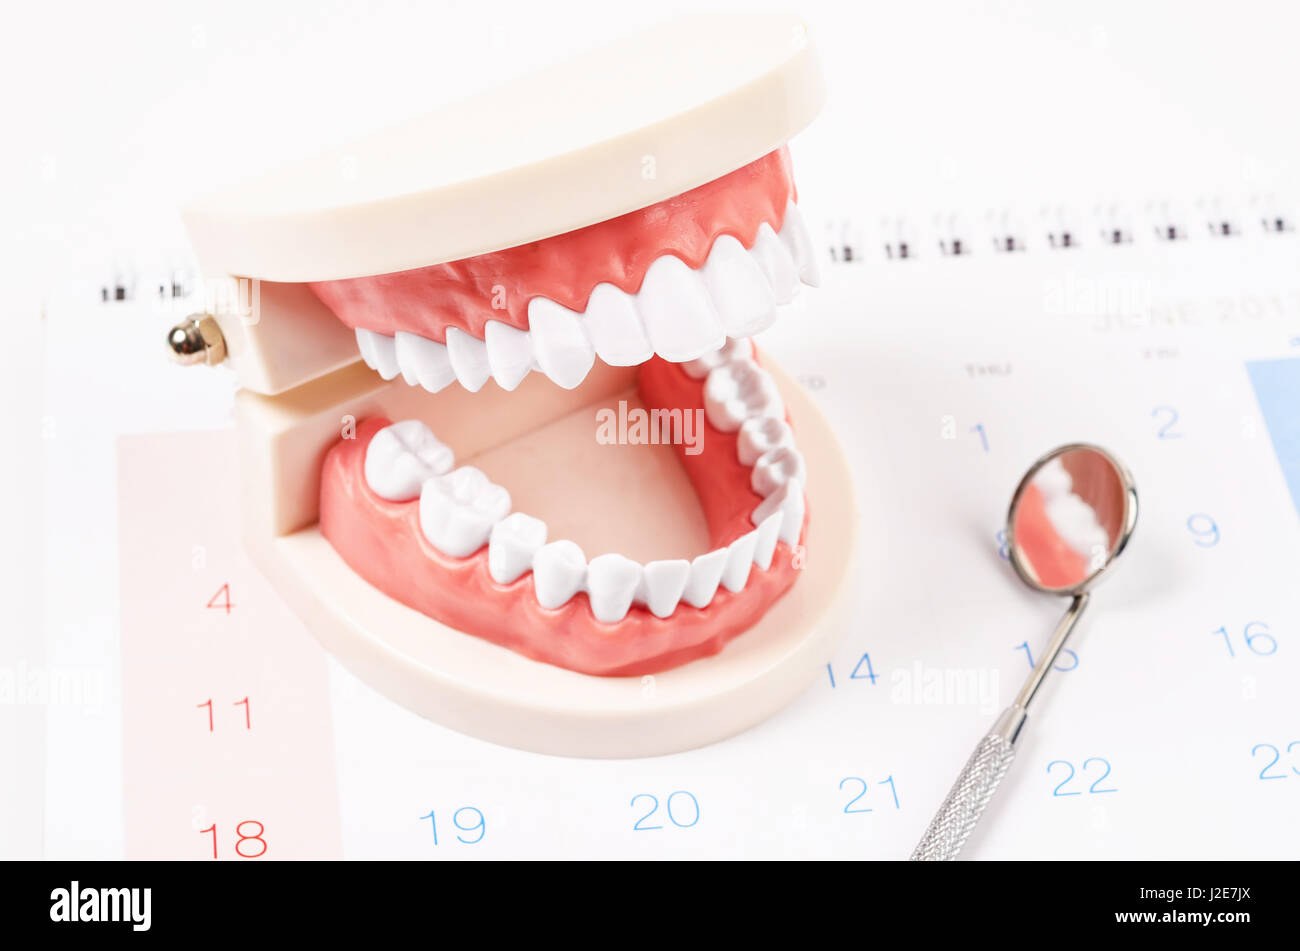 Weiße Zähne-Modell und Dentalinstrumente auf Kalender Seitenhintergrund.  Termin beim Zahnarzt Konzept. Stockfoto